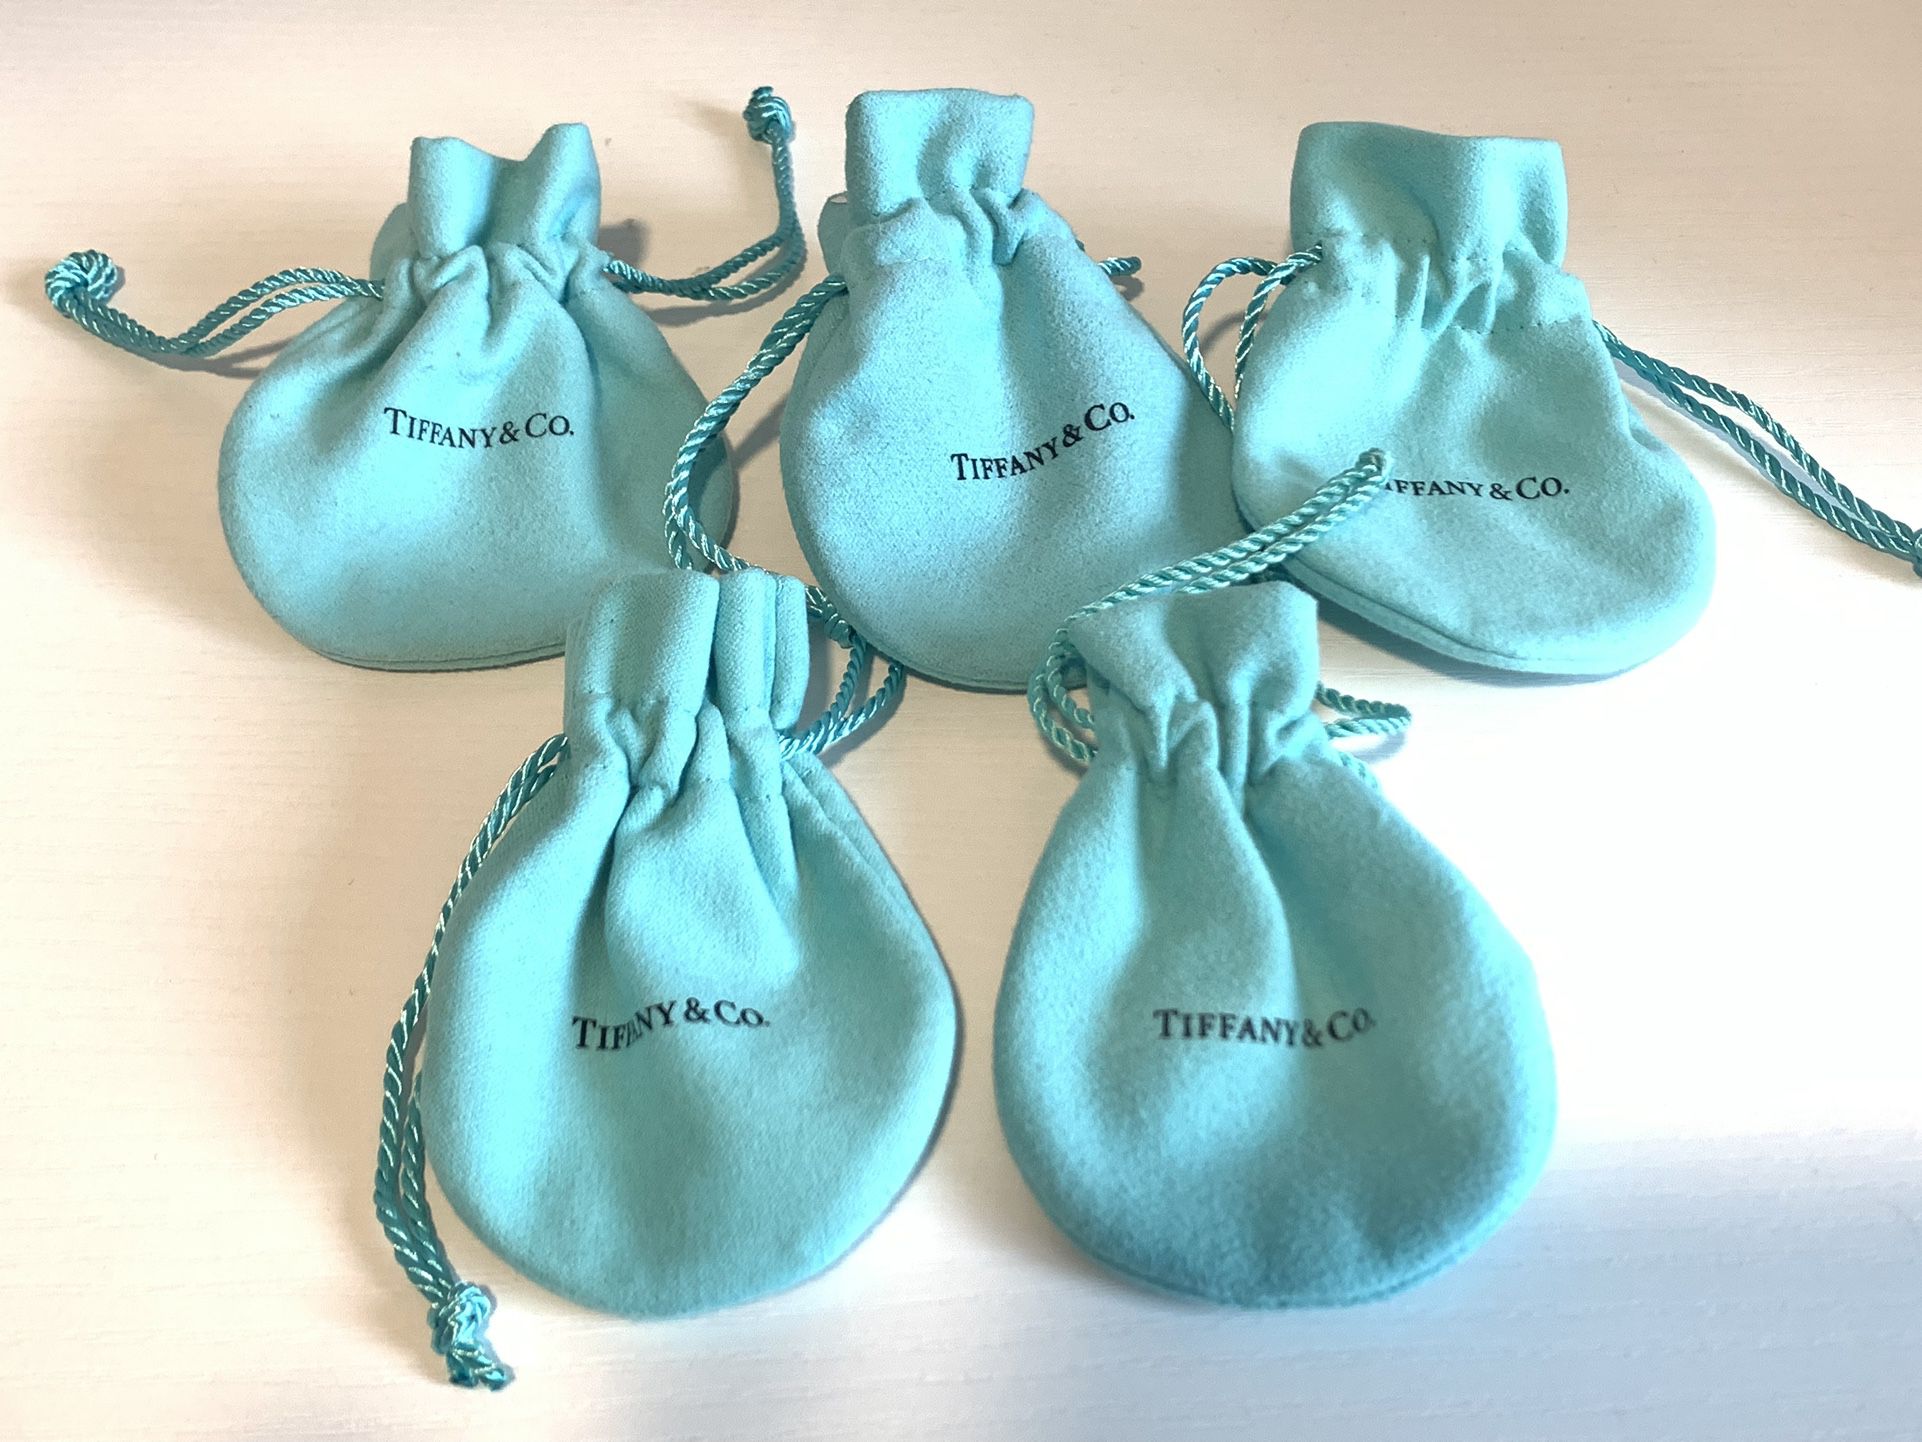 Genuine Tiffany & Co Jewelry Bags